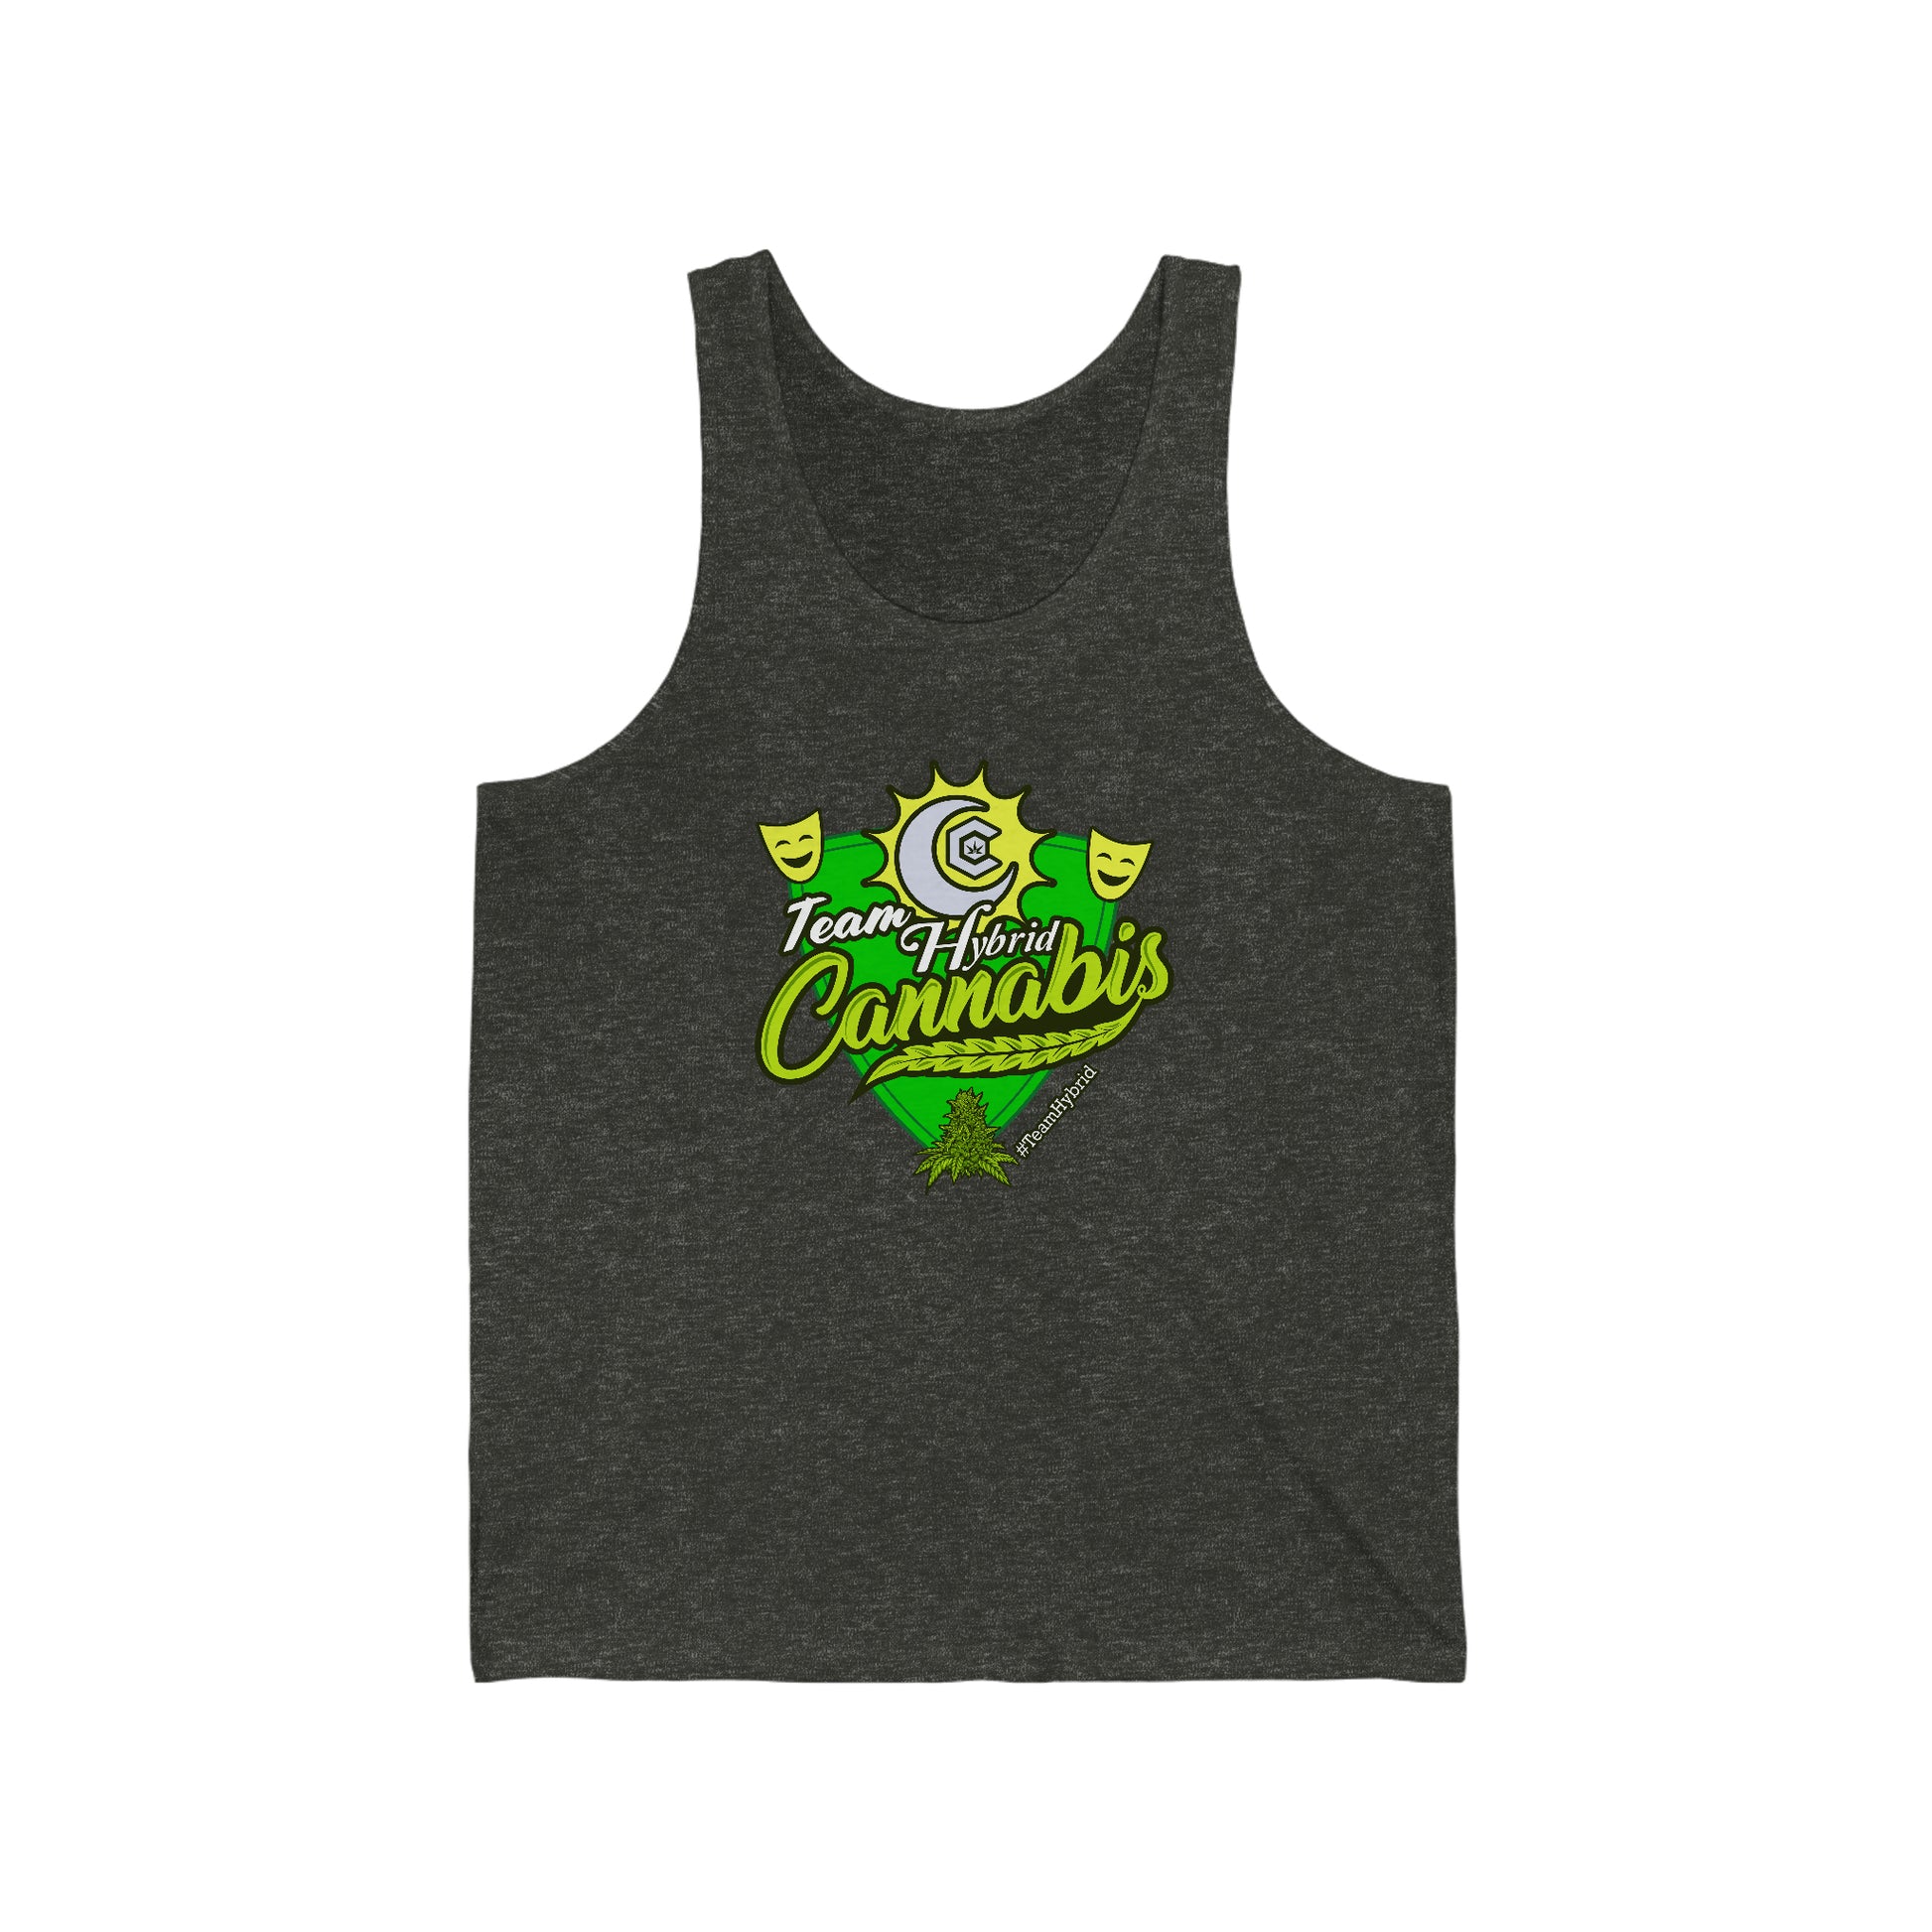 a charcoal black team hybrid cannabis tank top shirt